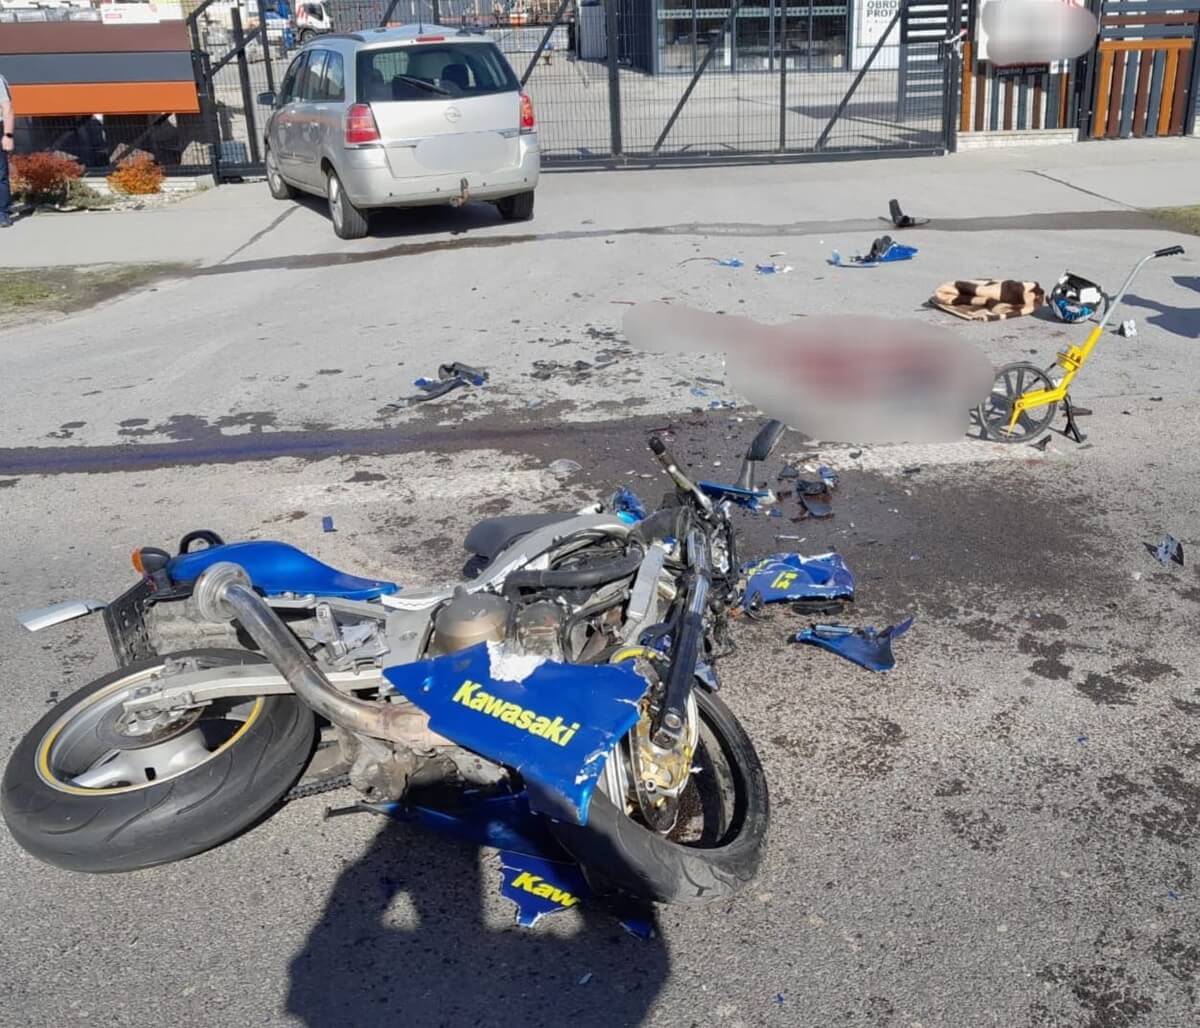 Motocyklista zderzył się w oplem w Mętowie